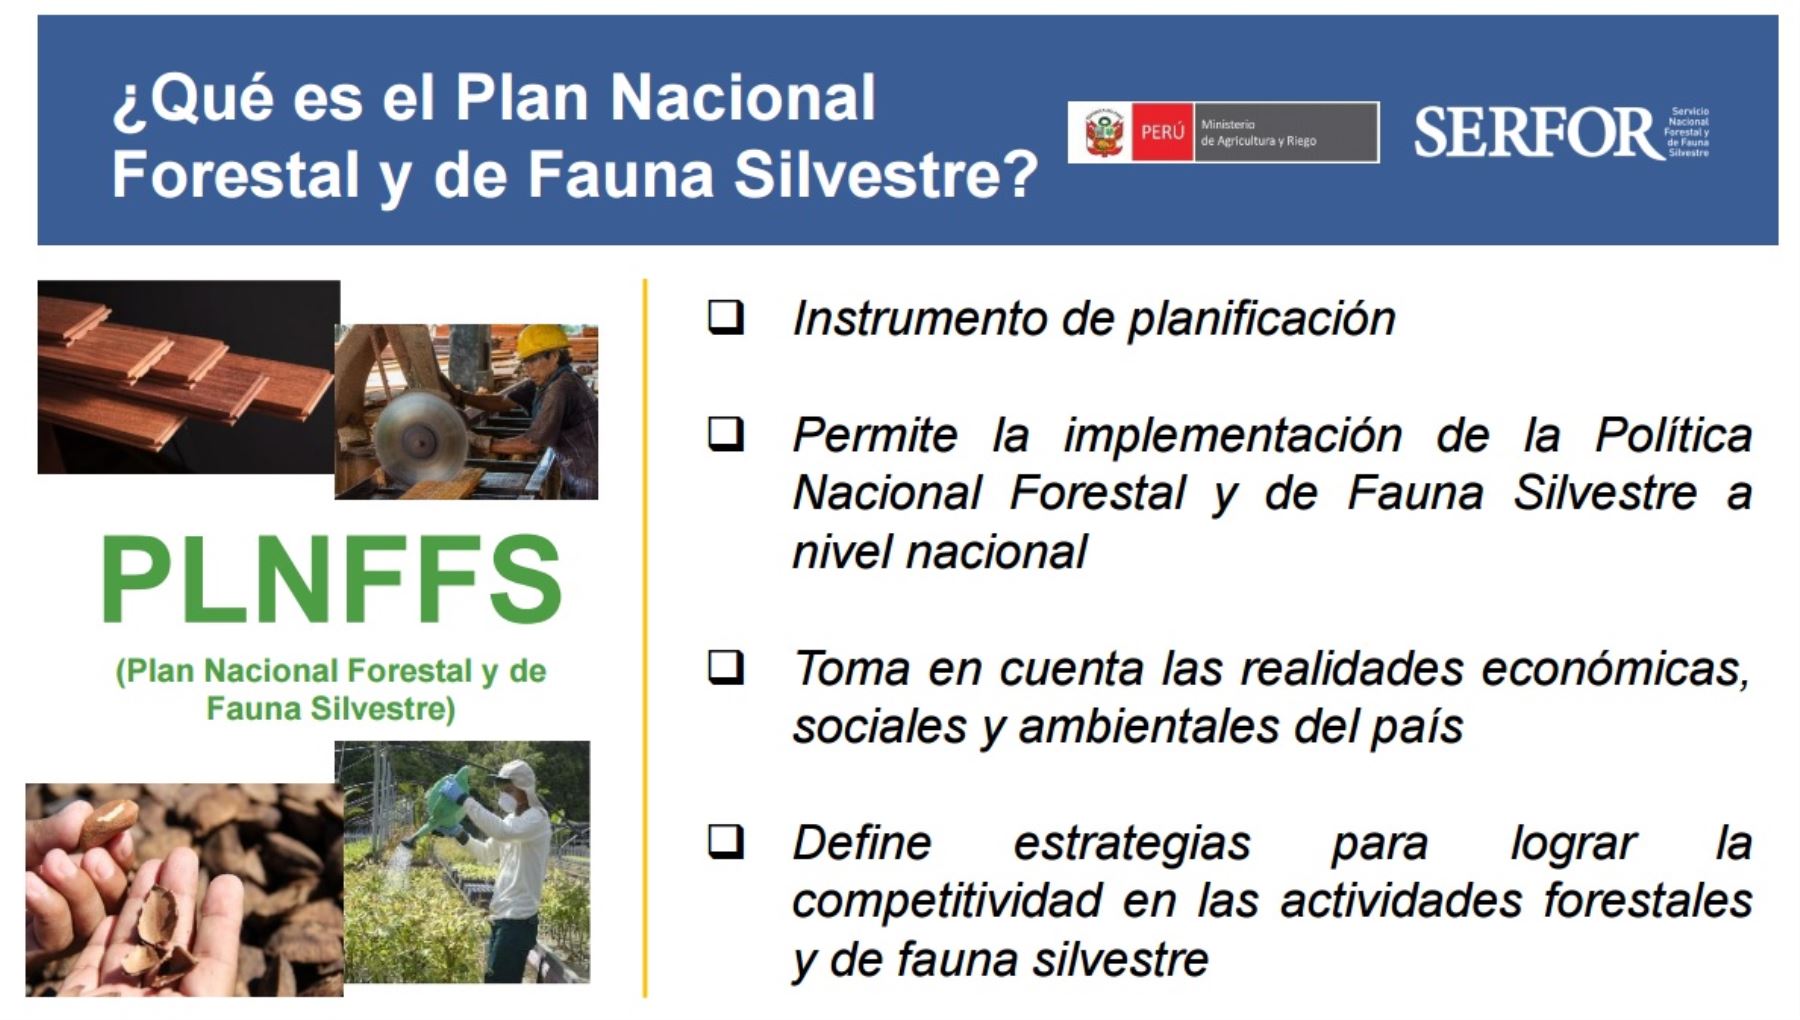 Concepto de Plan Nacional Forestal y de Fauna Silvestre